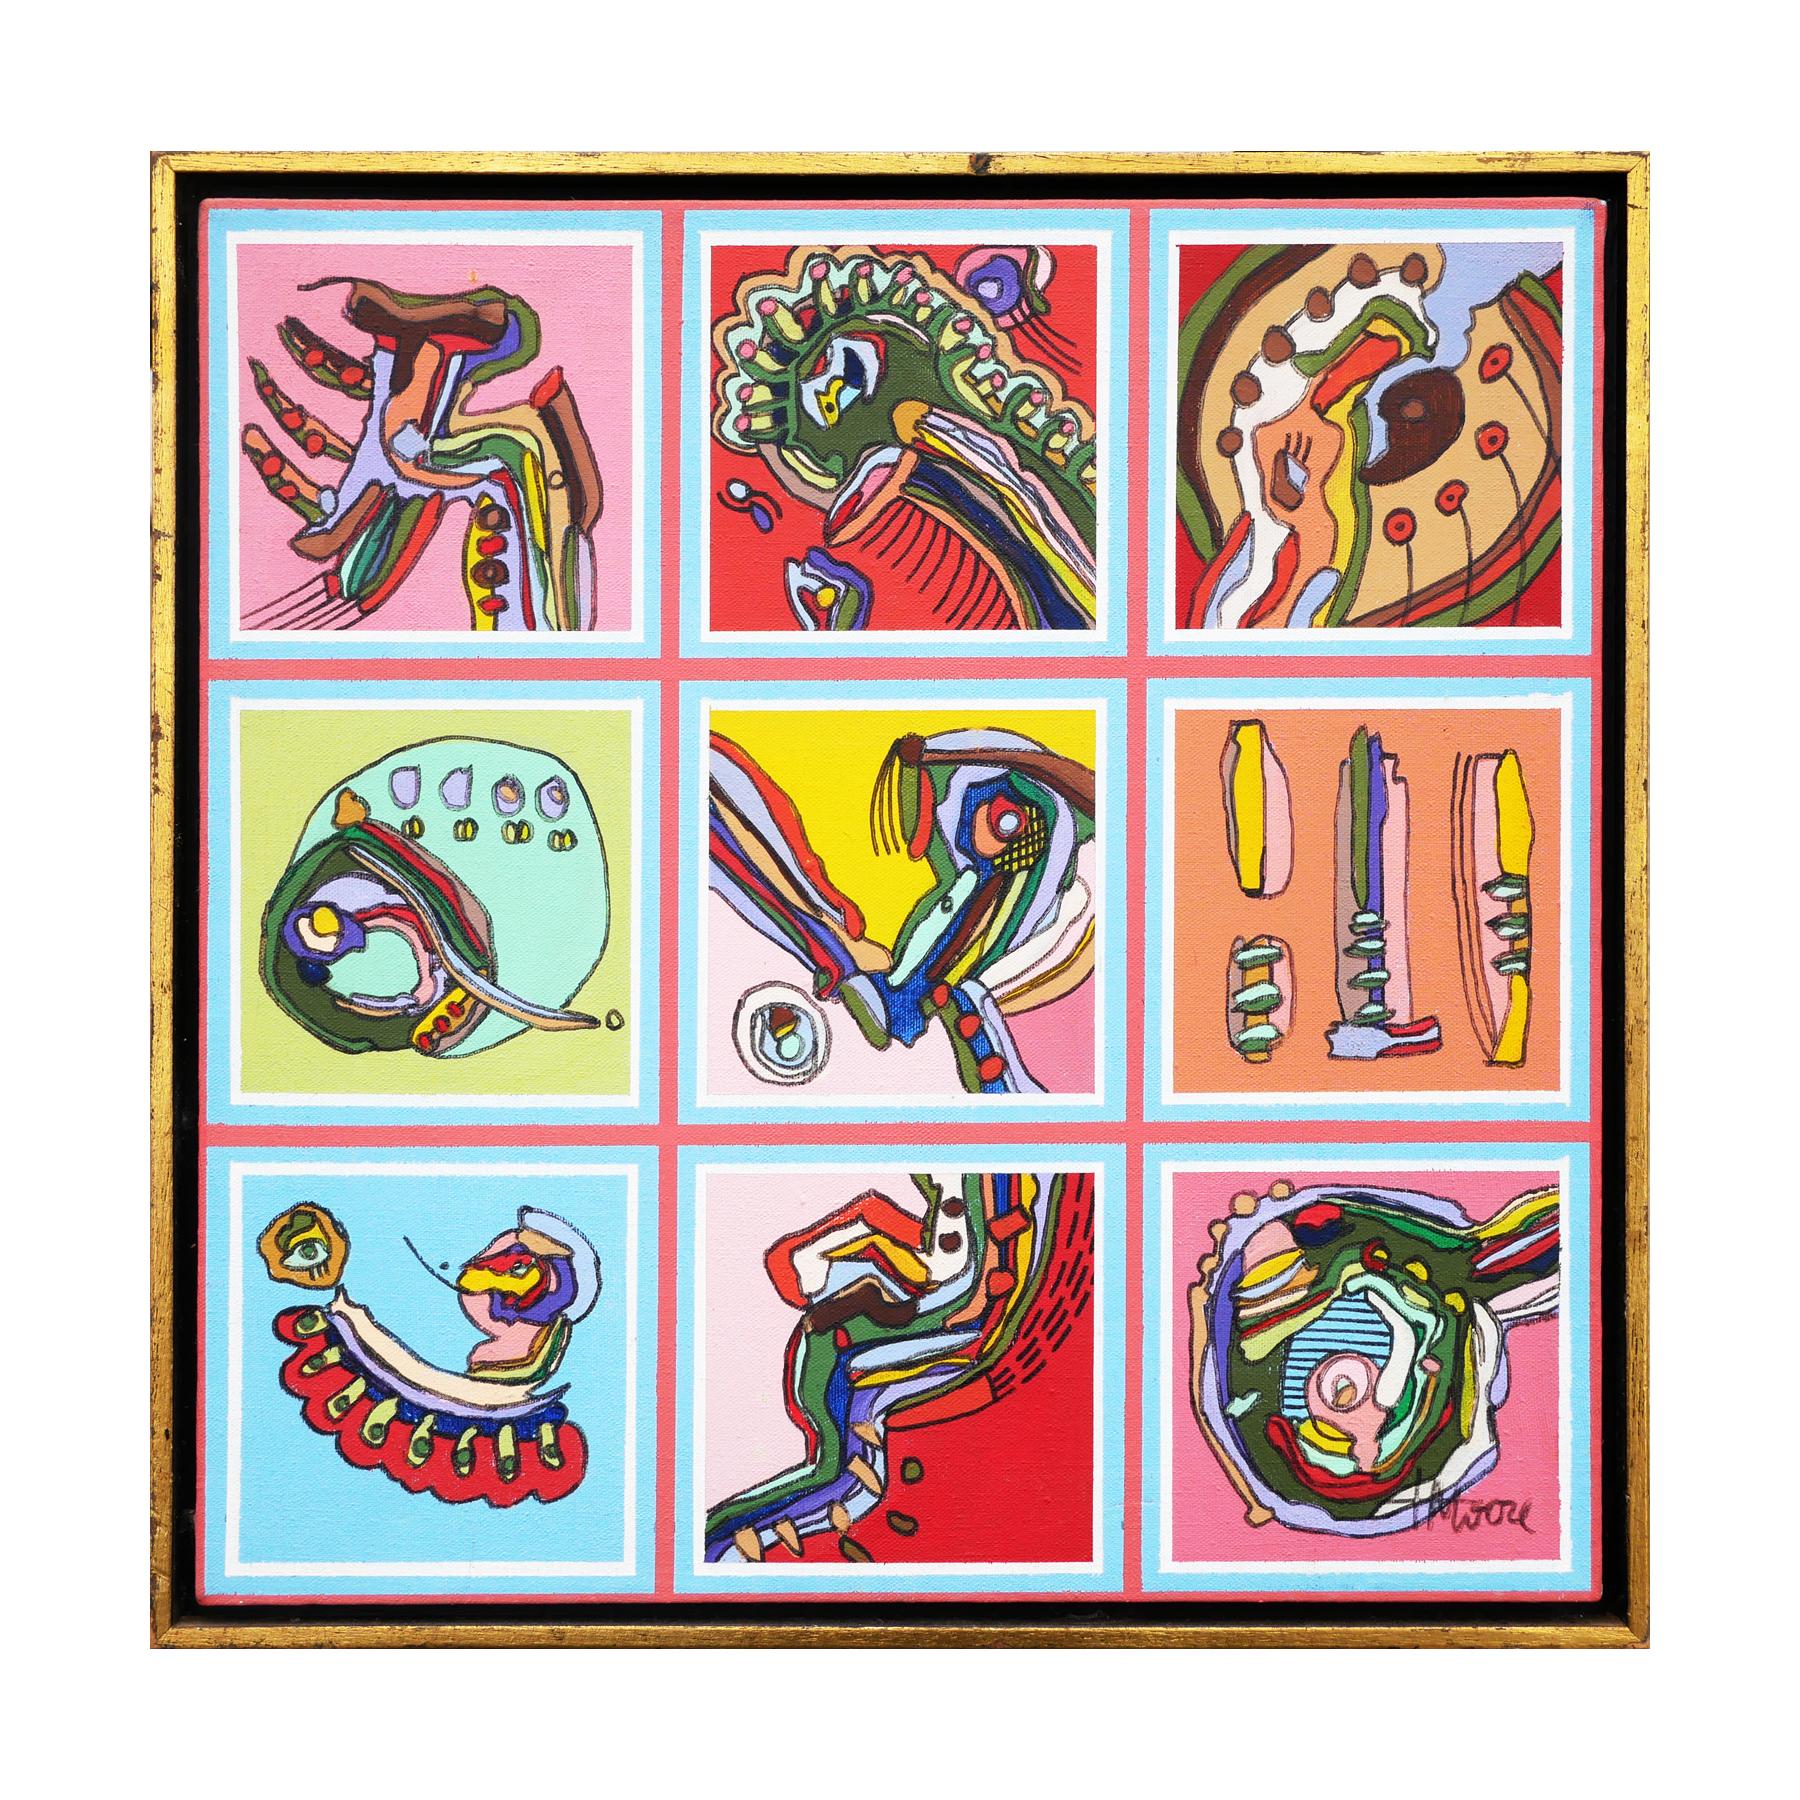 Buntes abstraktes zeitgenössisches Gemälde des Künstlers T. Moore. Das Gemälde zeigt ein Gitter aus 9 Quadraten mit bunten biomorphen Formen, Mustern und Figuren. Die Blöcke sind vor einem himmelblauen Hintergrund mit rosa Gittern gemalt. Signiert